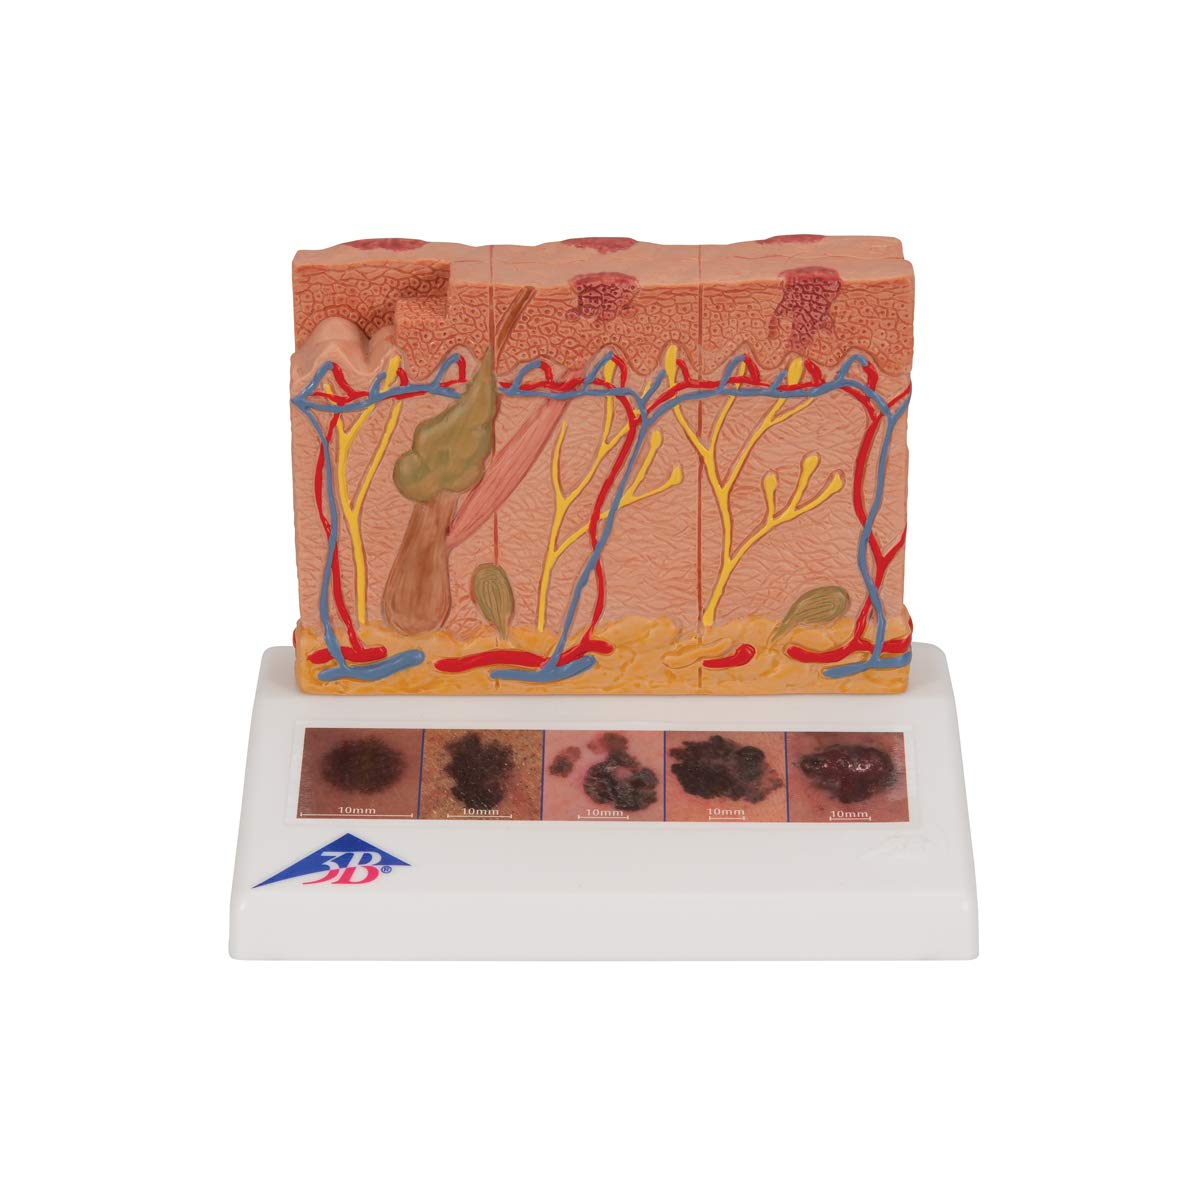 3B Scientific Menschliche Anatomie - Hautkrebs-Modell + kostenlose Anatomie App - 3B Smart Anatomy, J15